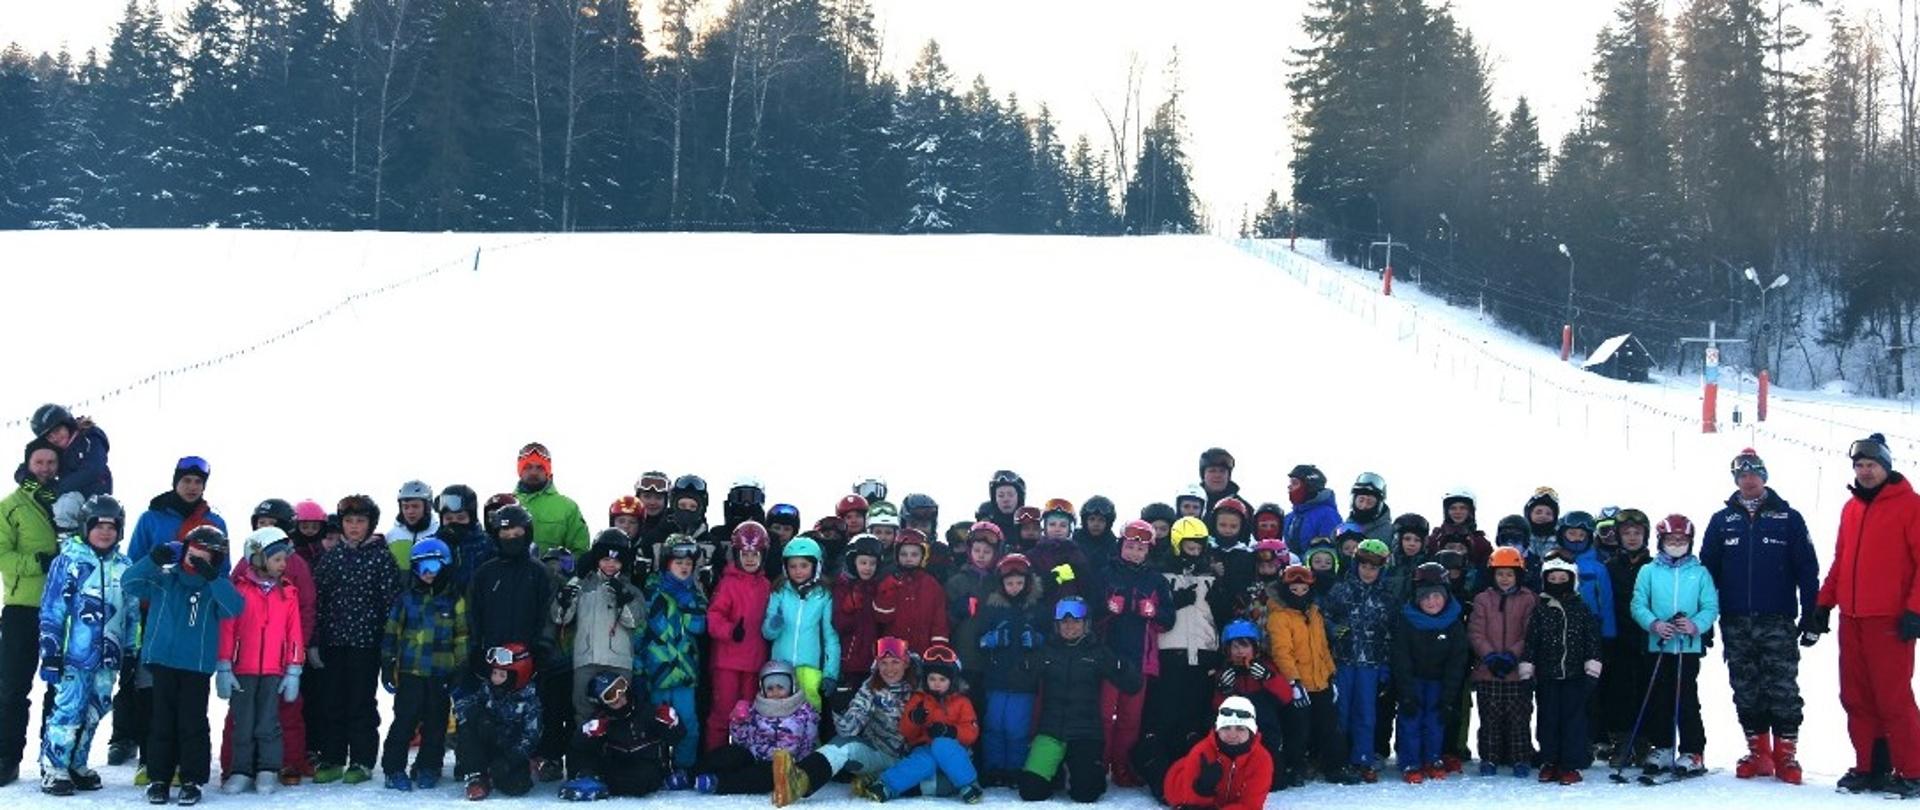 Kilkadziesiąt dzieci w strojach narciarskich stojące na stoku narciarskim